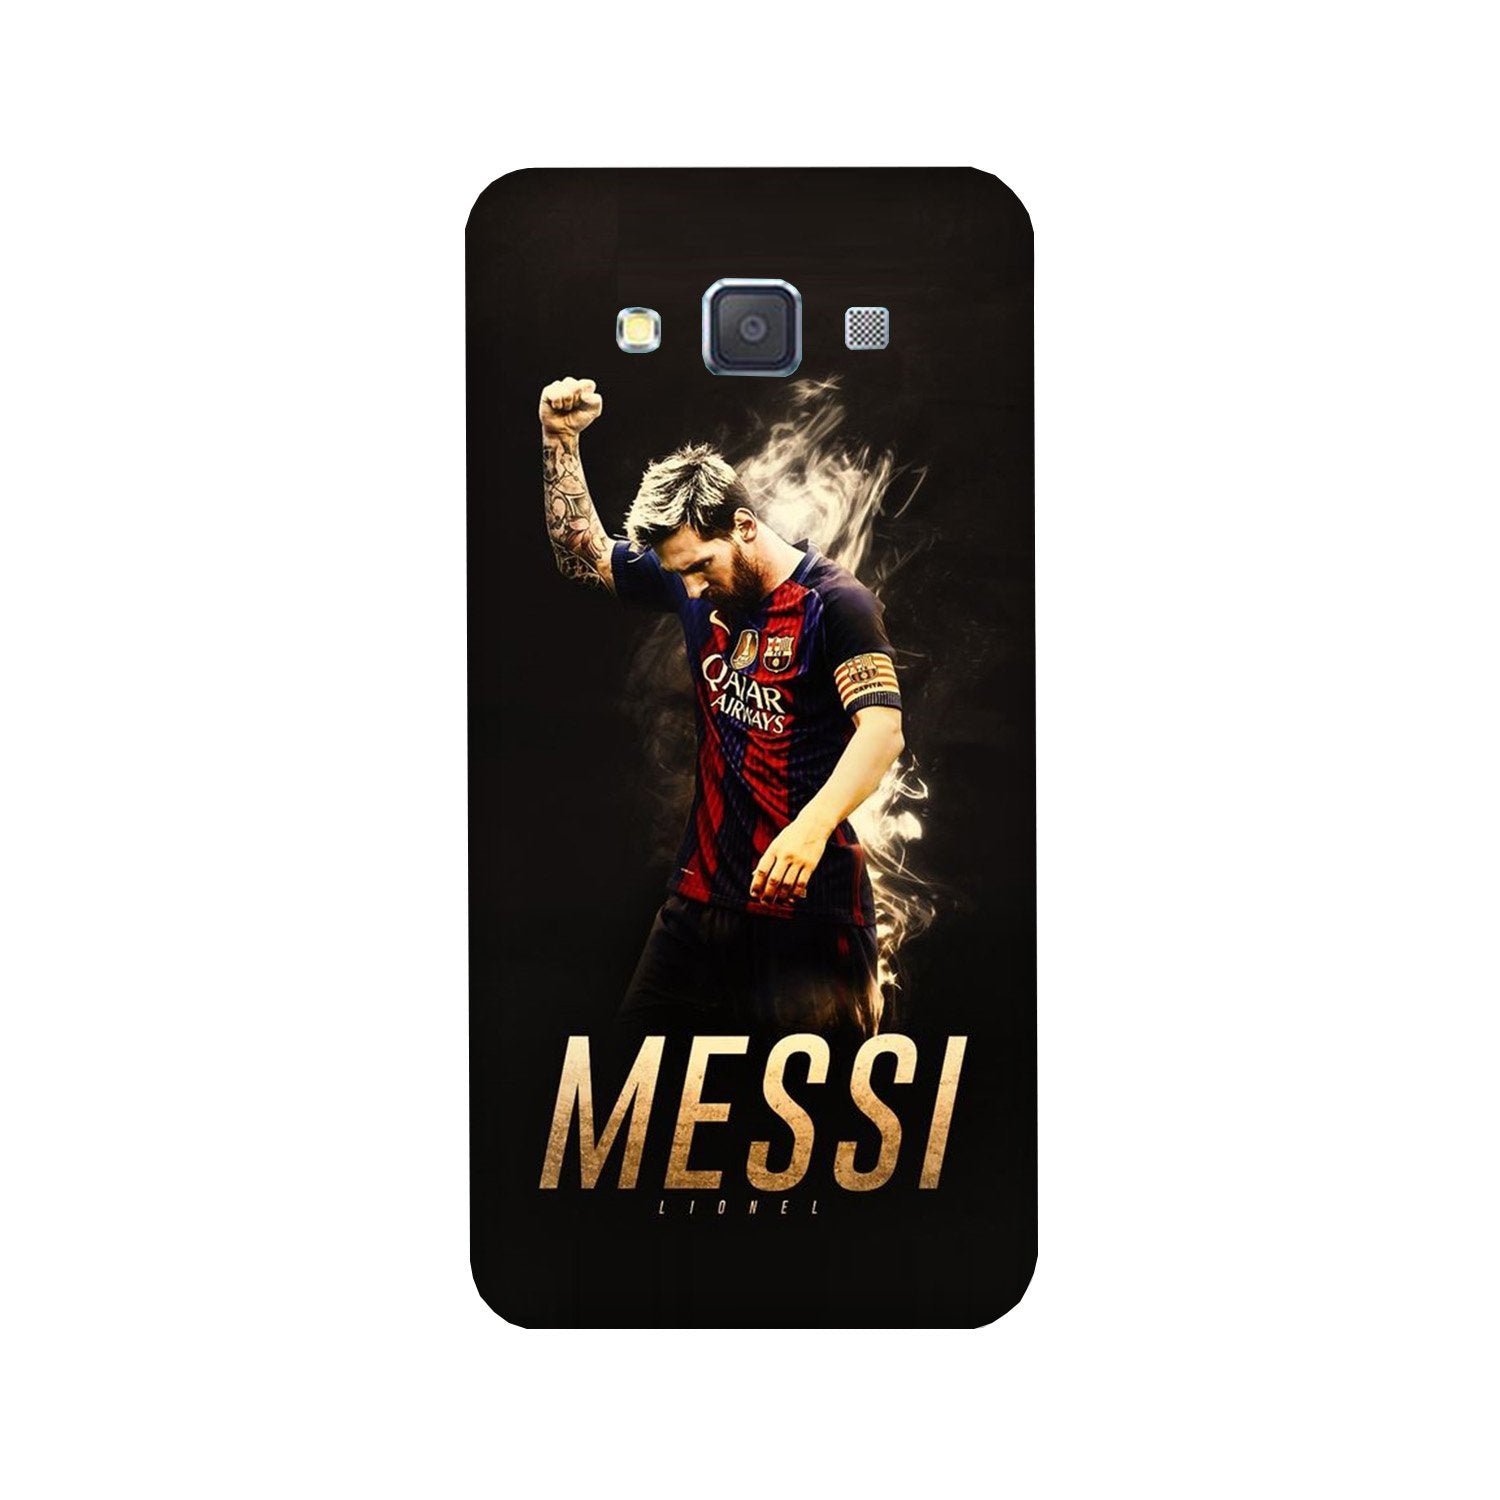 Messi Case for Galaxy Grand 2(Design - 163)